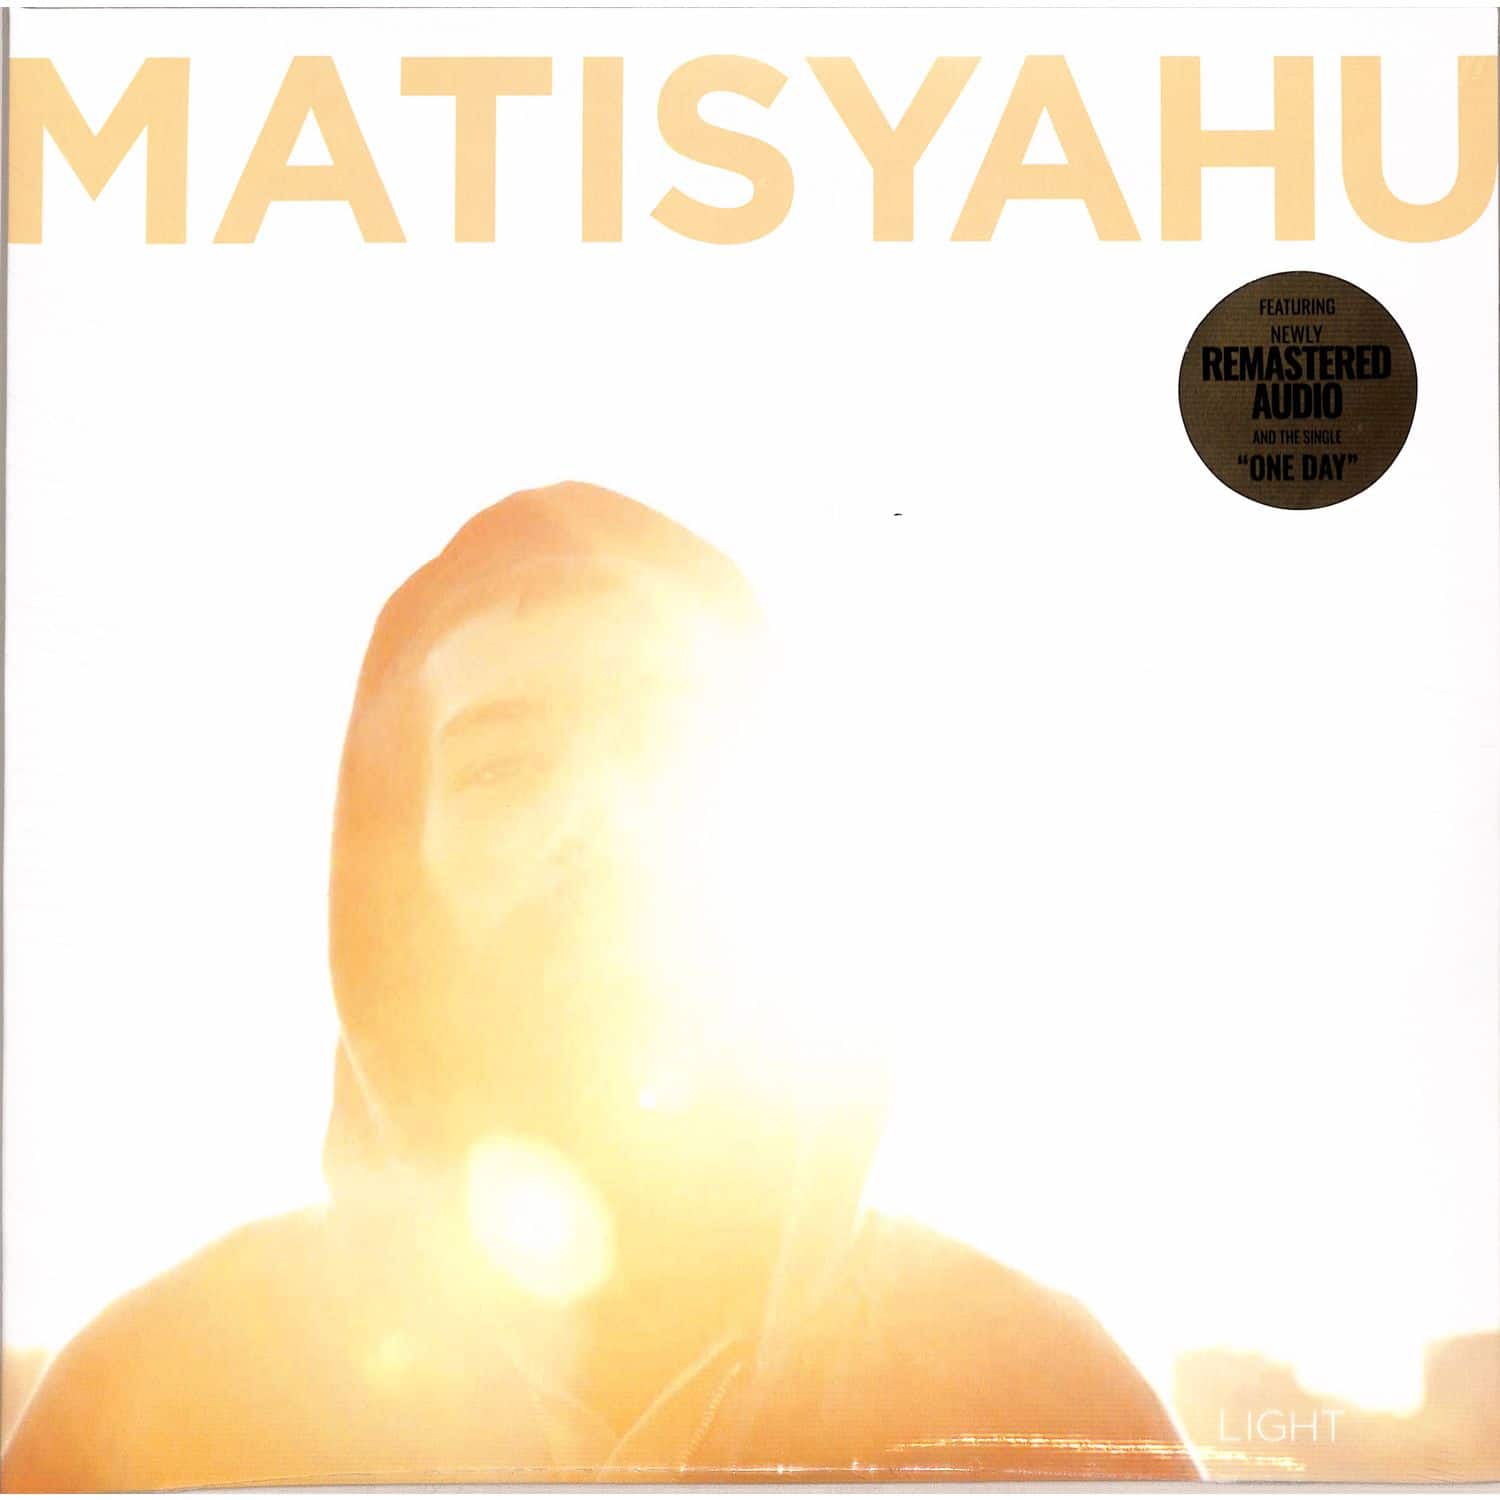 Matisyahu - LIGHT 